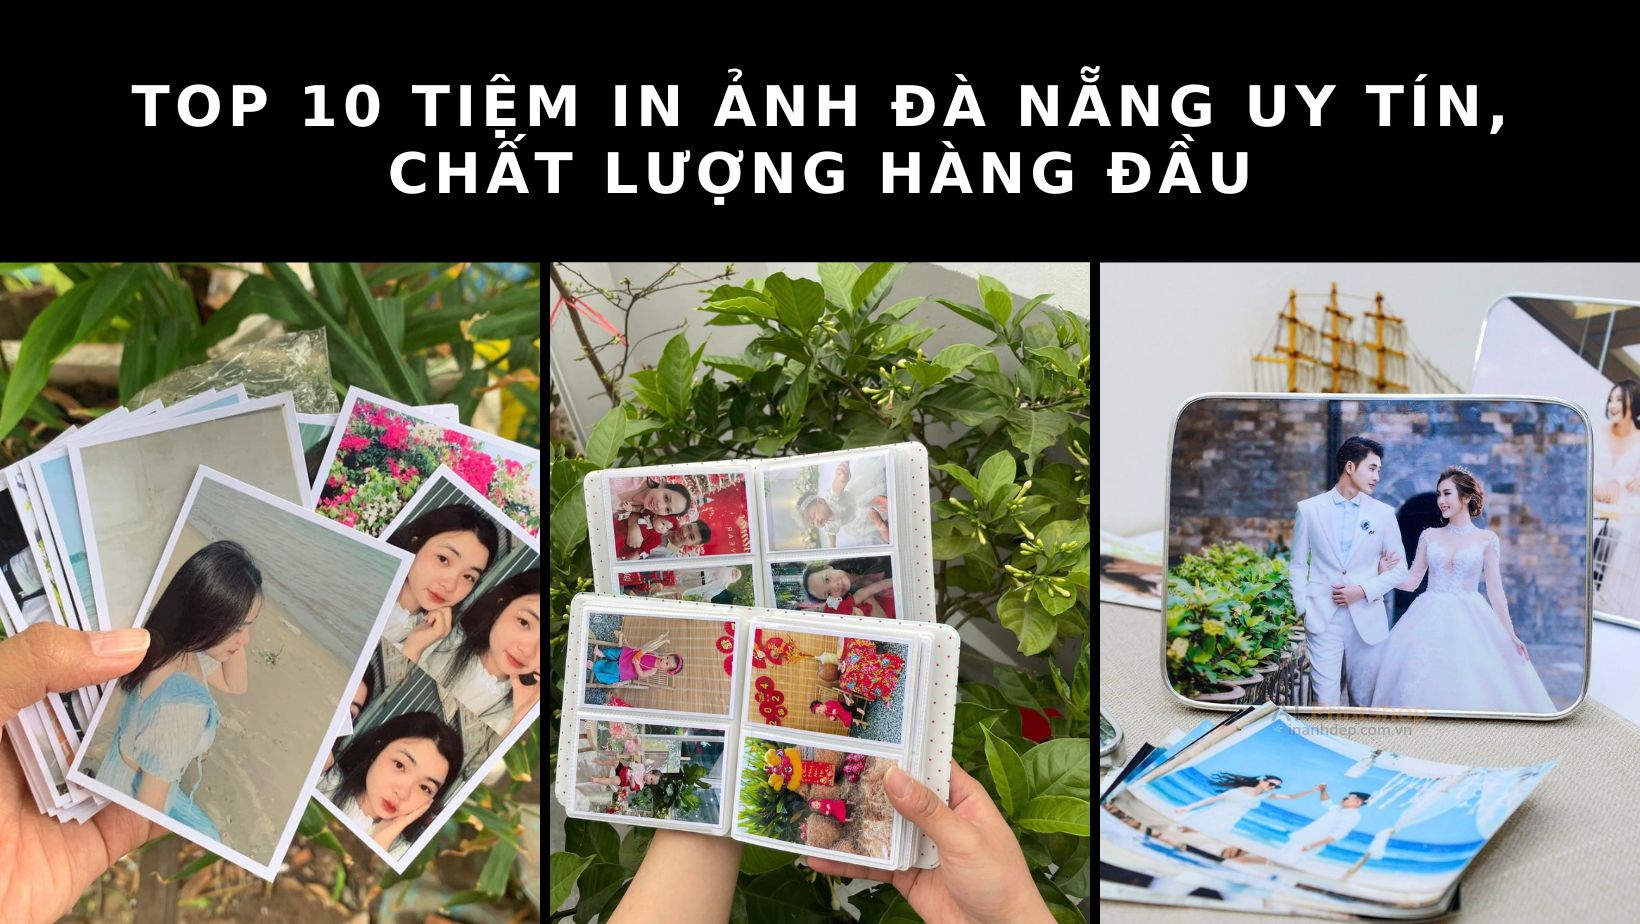 Bật mí địa chỉ 10 tiệm in ảnh Đà Nẵng được đông đảo người lựa chọn